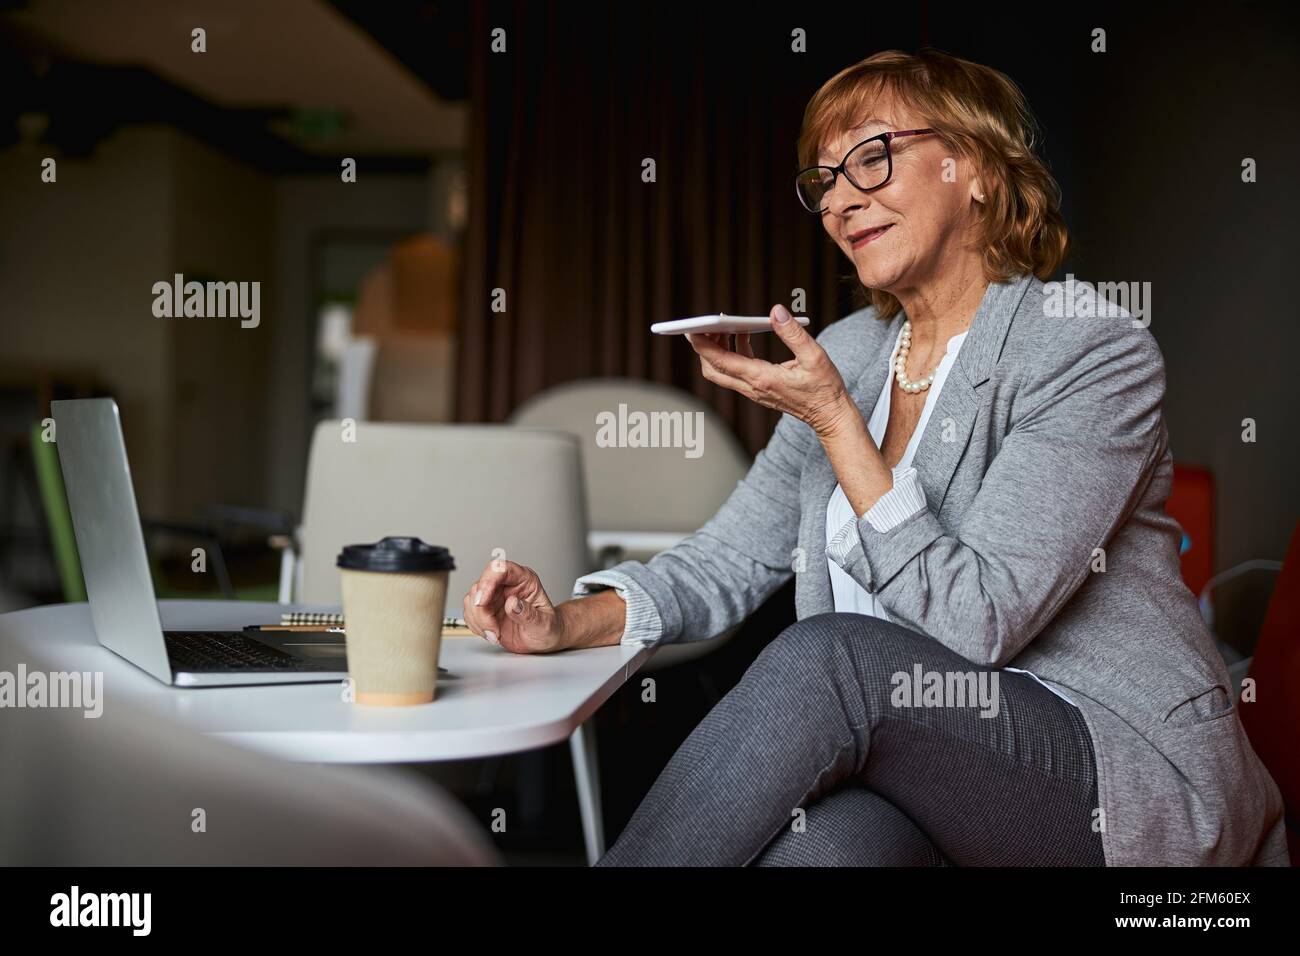 Mature female listening to her interlocutor online Stock Photo